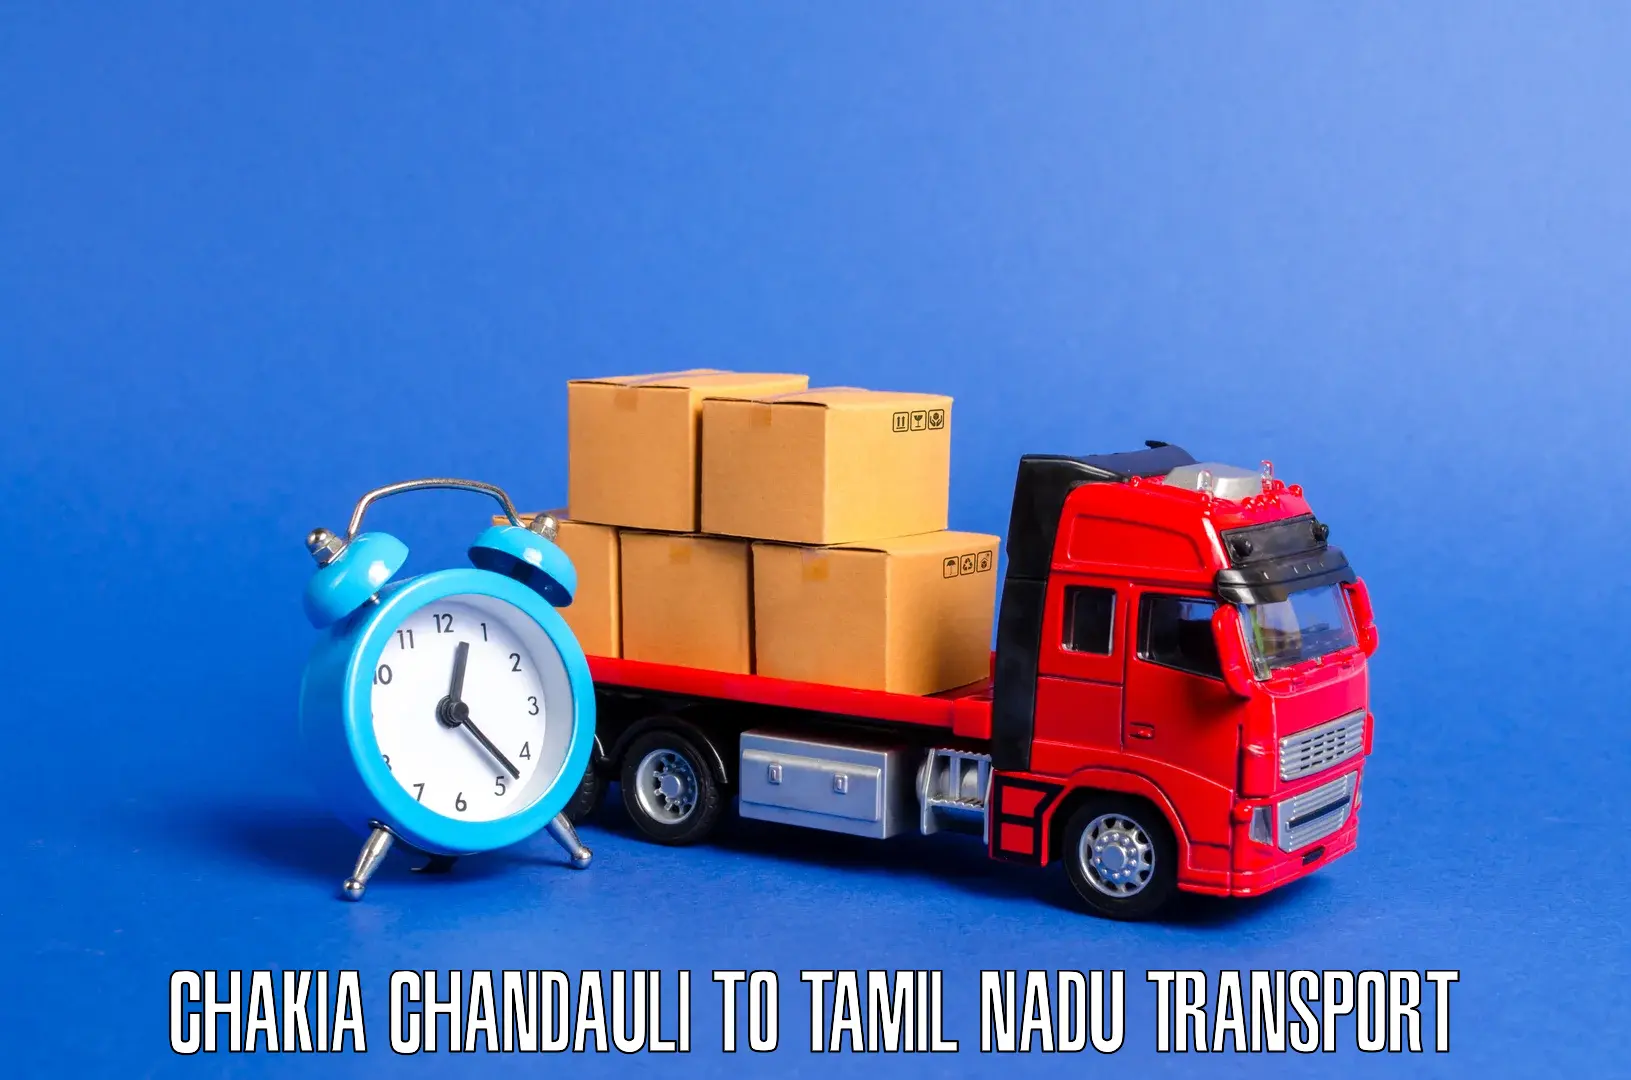 Daily transport service Chakia Chandauli to Padi